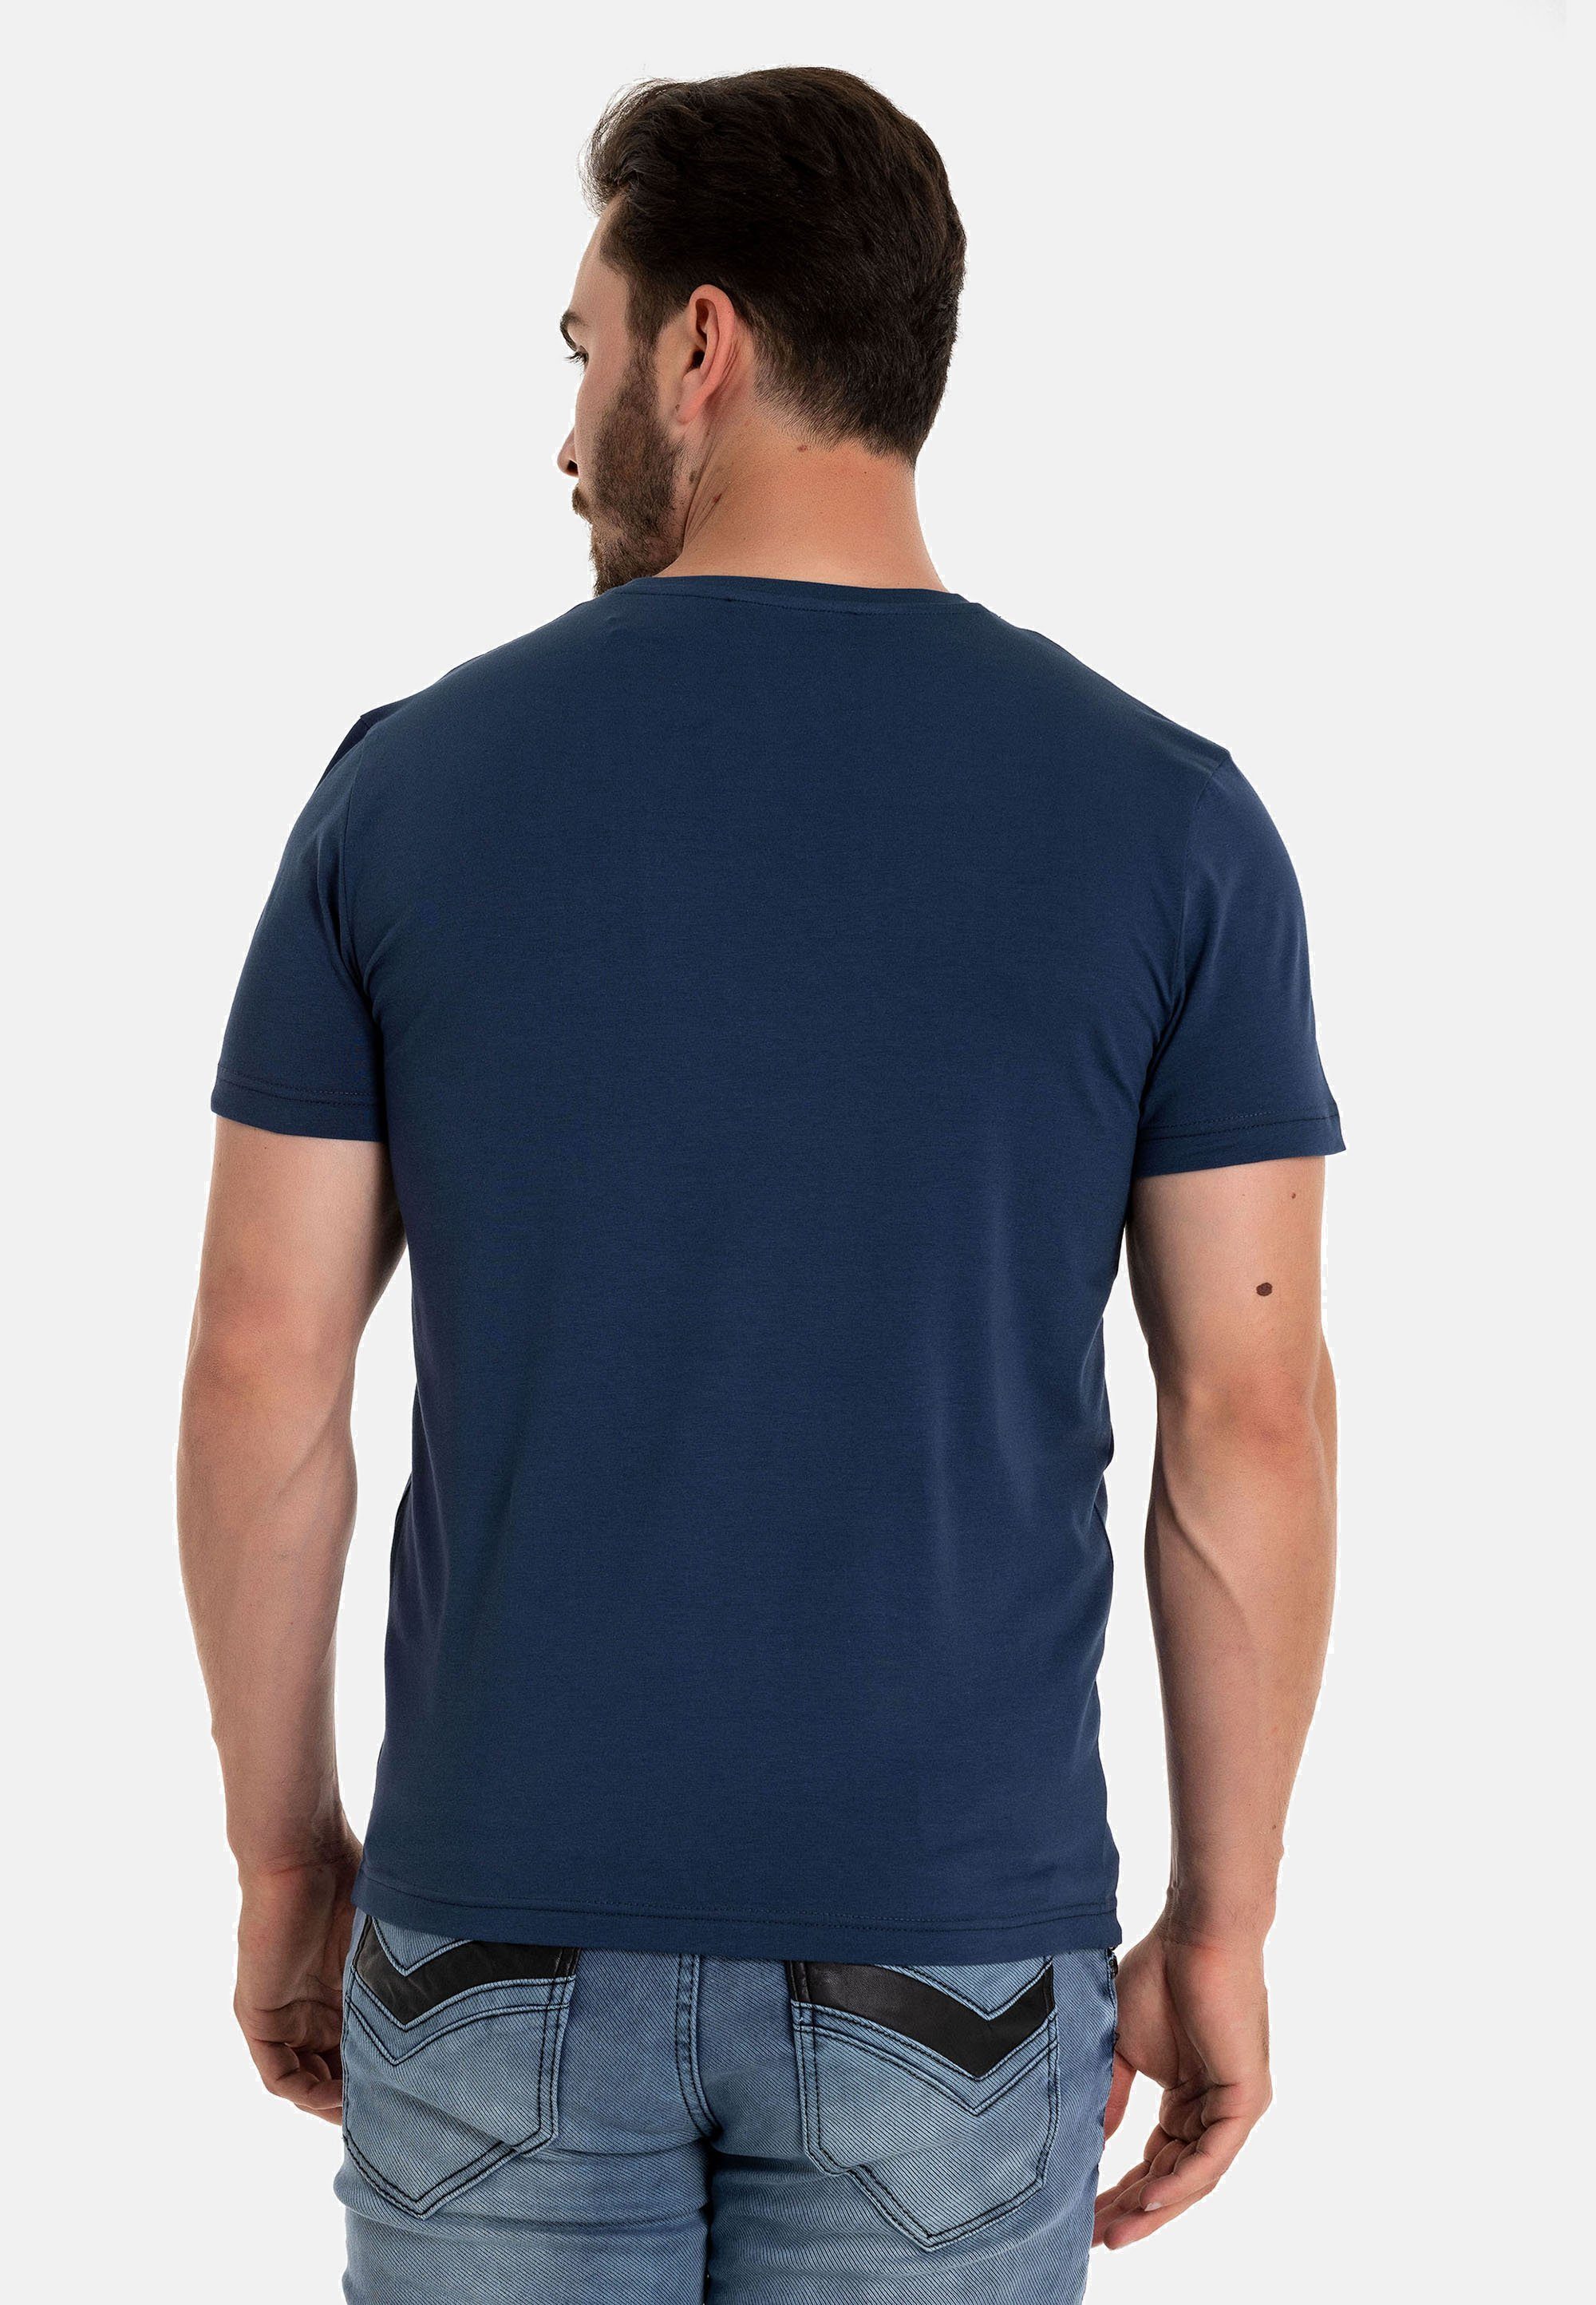 & blau Markenprint CT717 Cipo trendigem mit Baxx T-Shirt